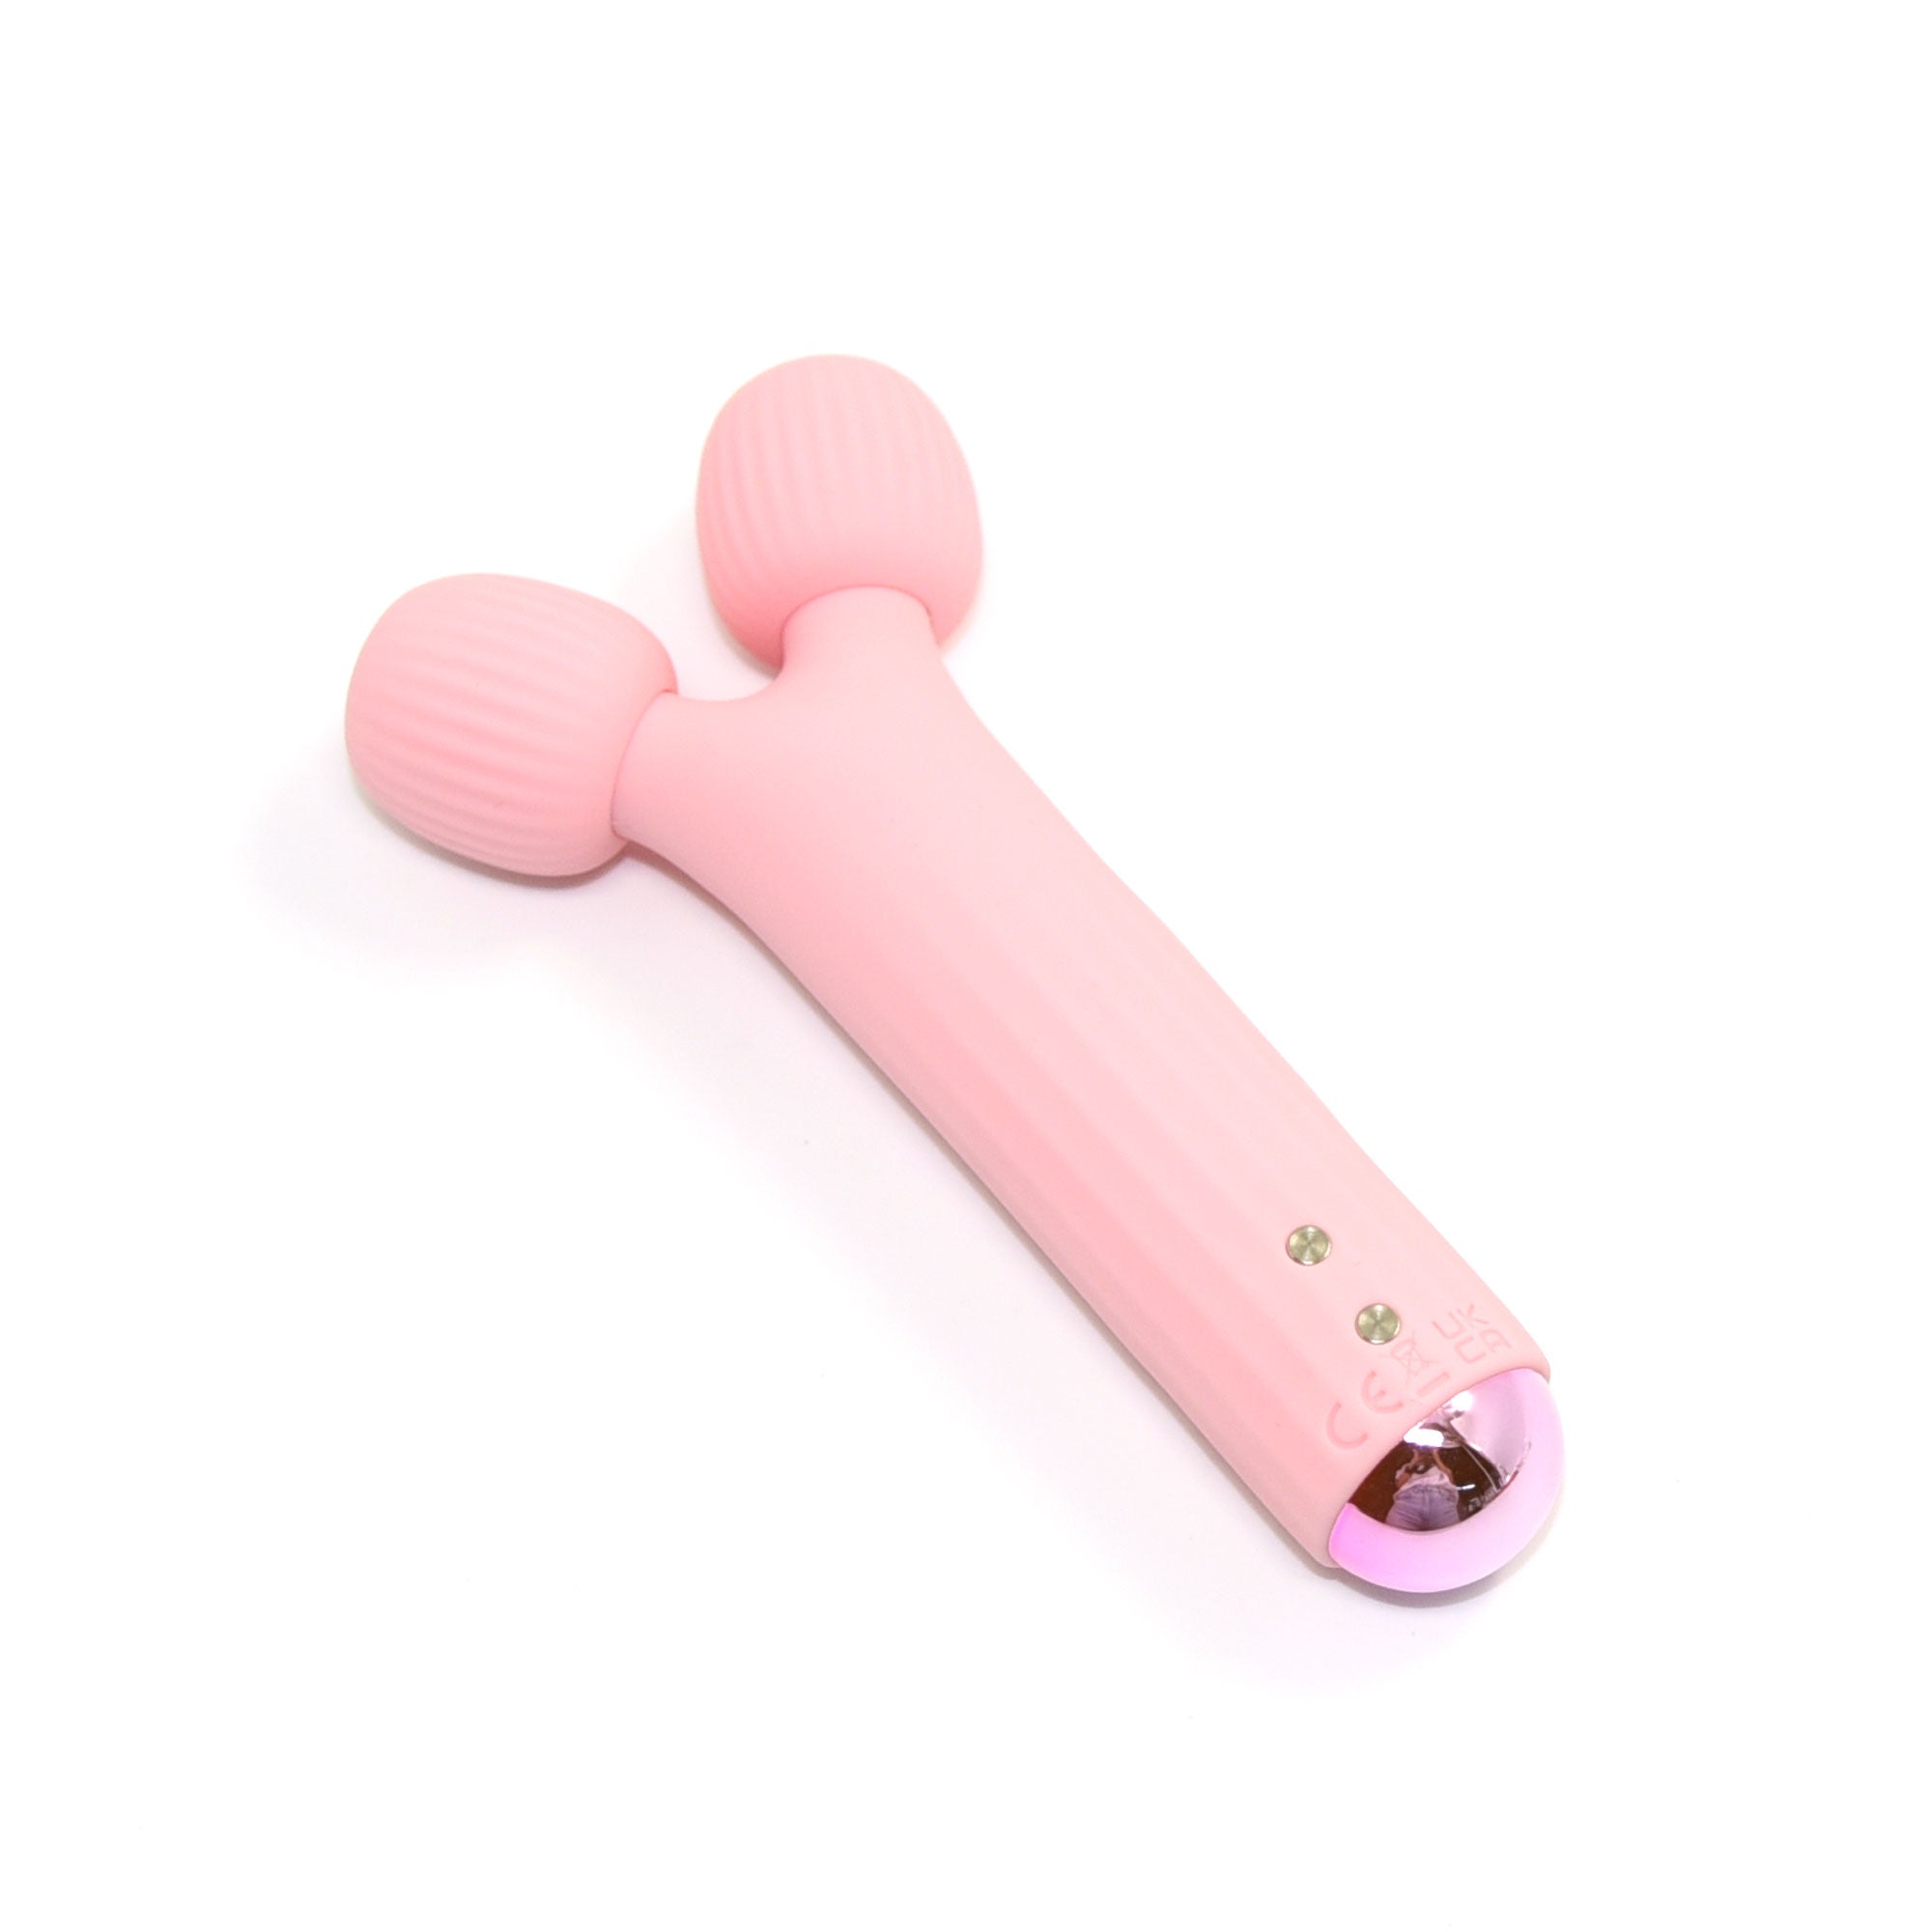 Pink Wand Vibrator for clitoris